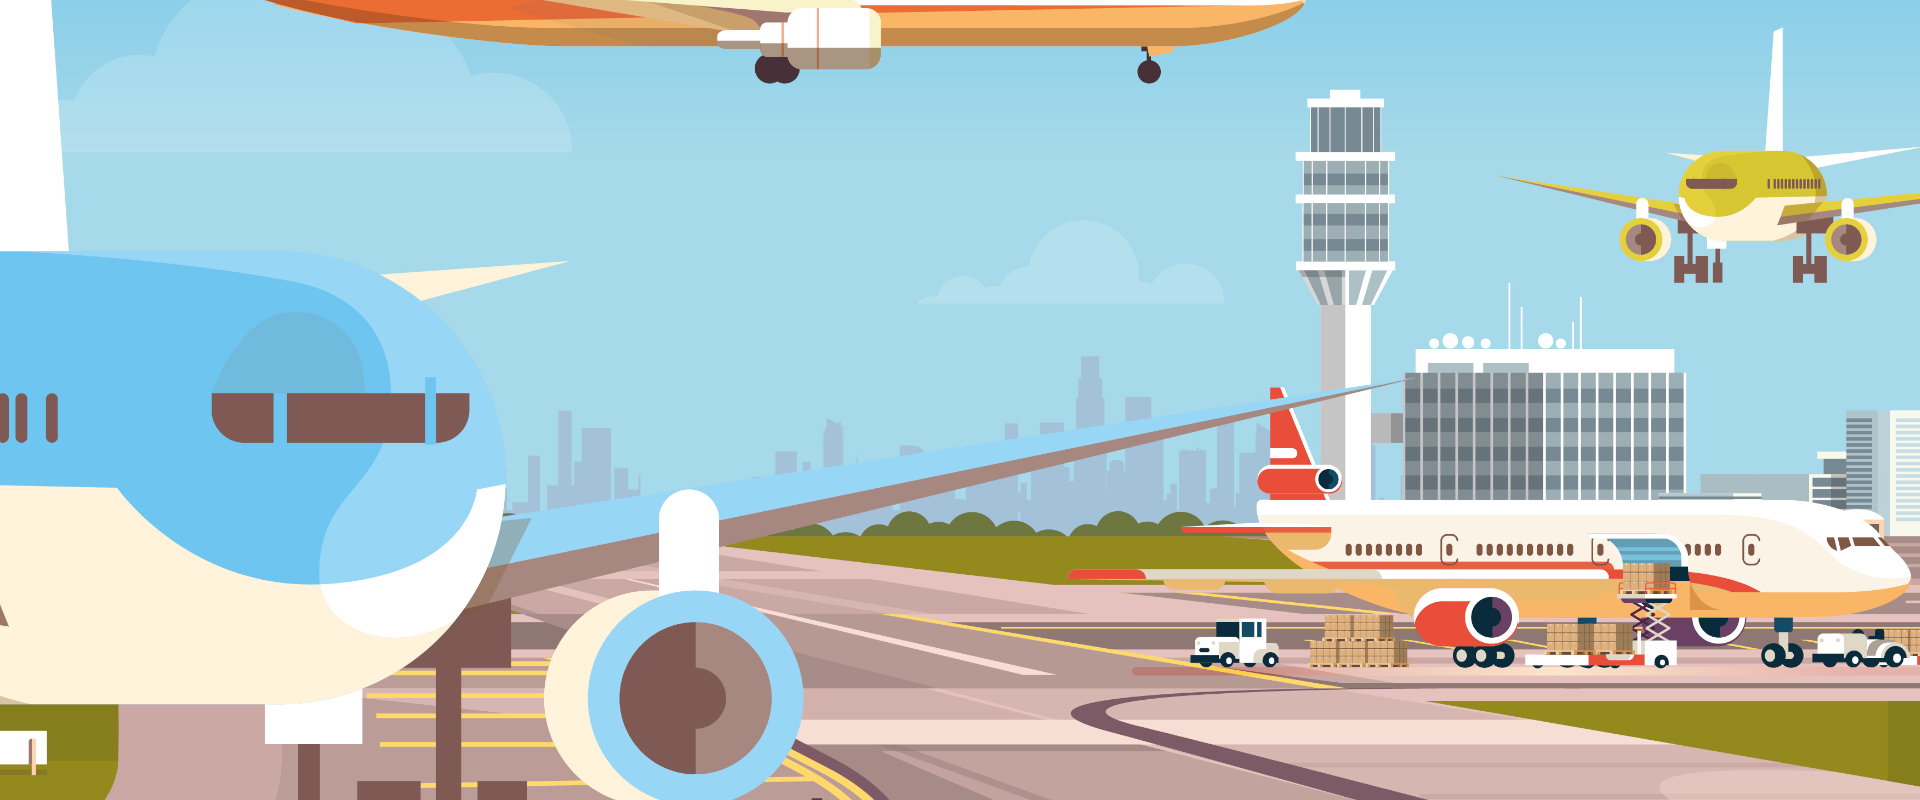 Diseño mural de Forex sobre el tema de los viajes y los aviones